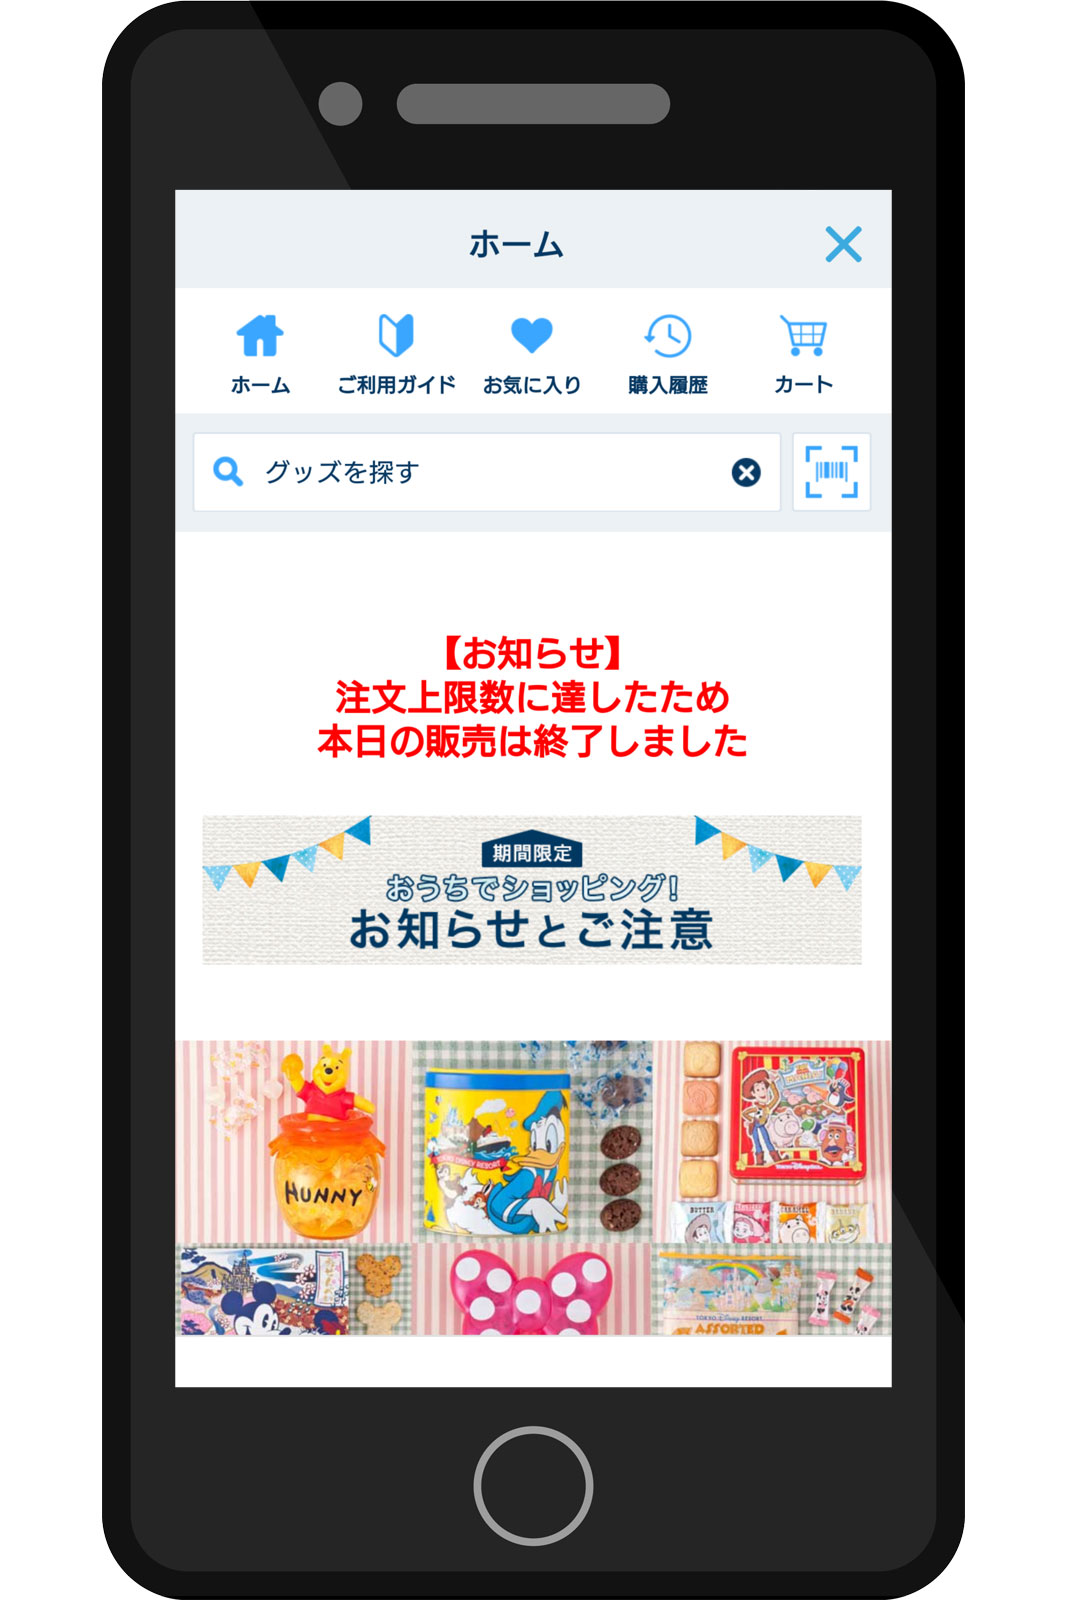 繋がらない 約分で受付終了 期間限定で東京ディズニーランド シーのオンライングッズ販売が5月26日からスタート Disney Colors Blog